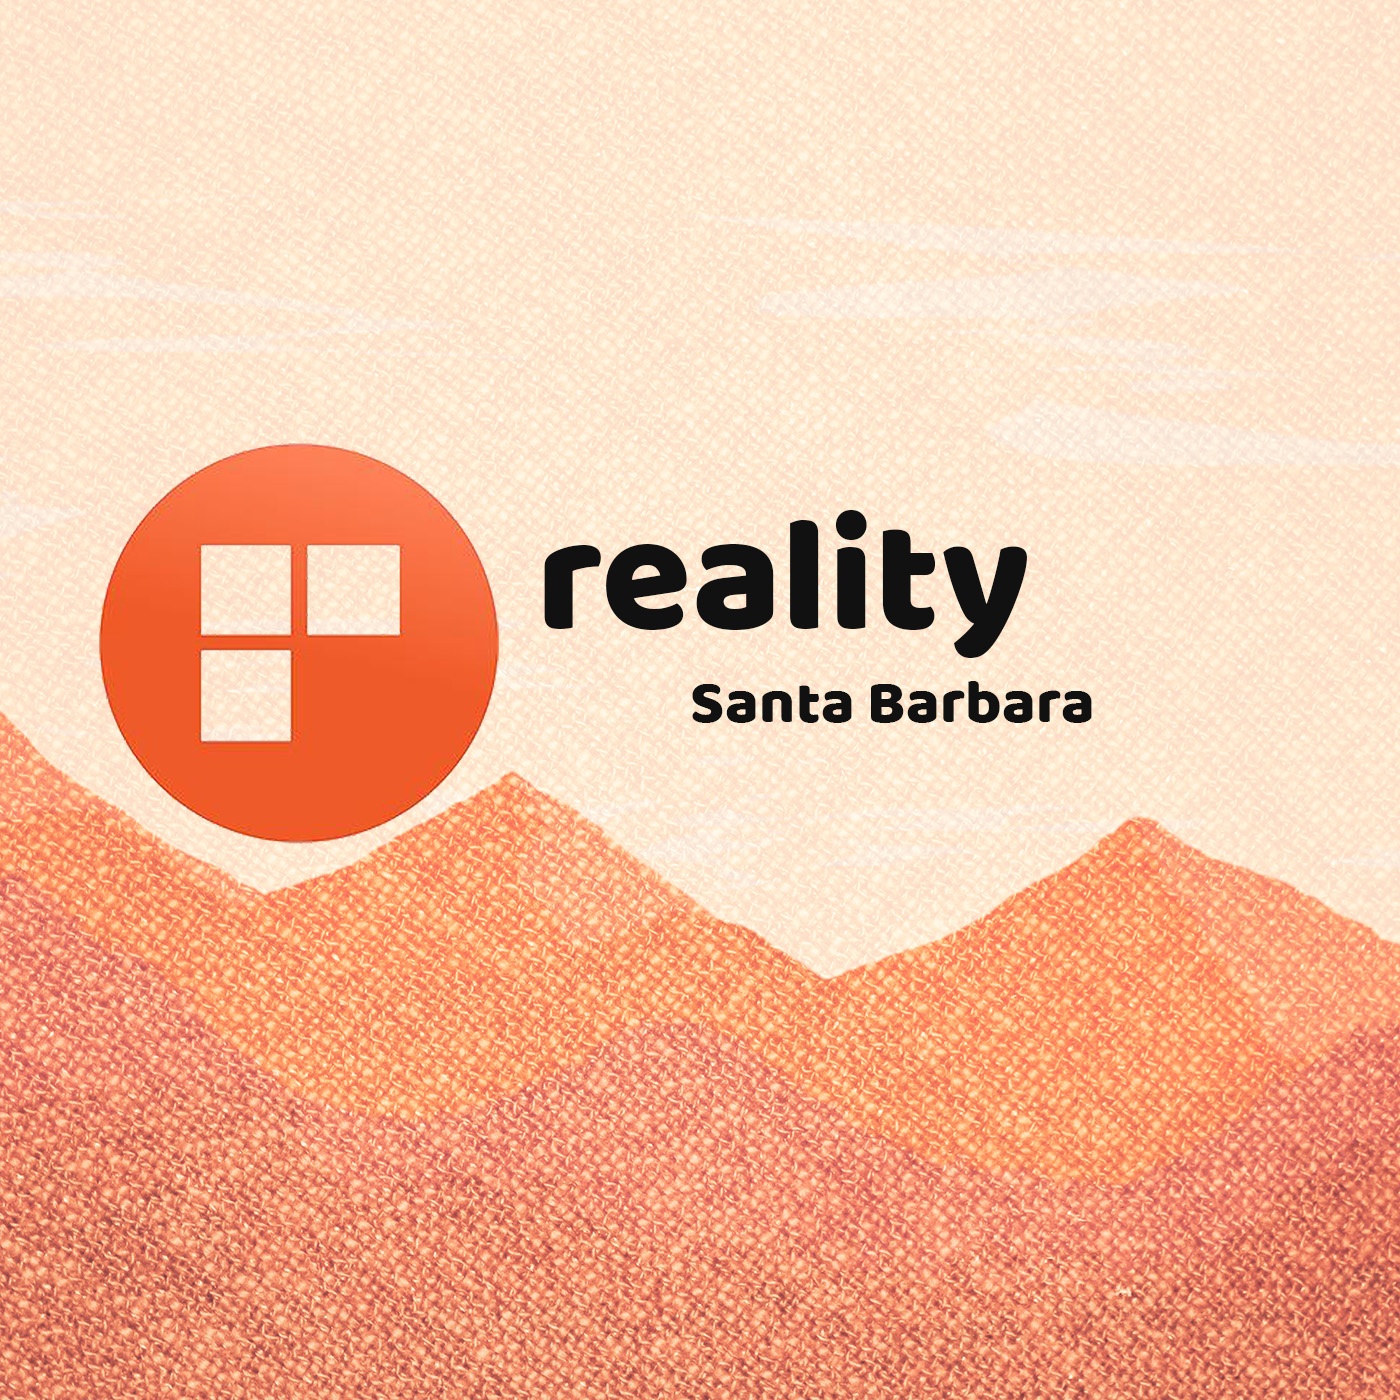 Reality Santa Barbara (Video)